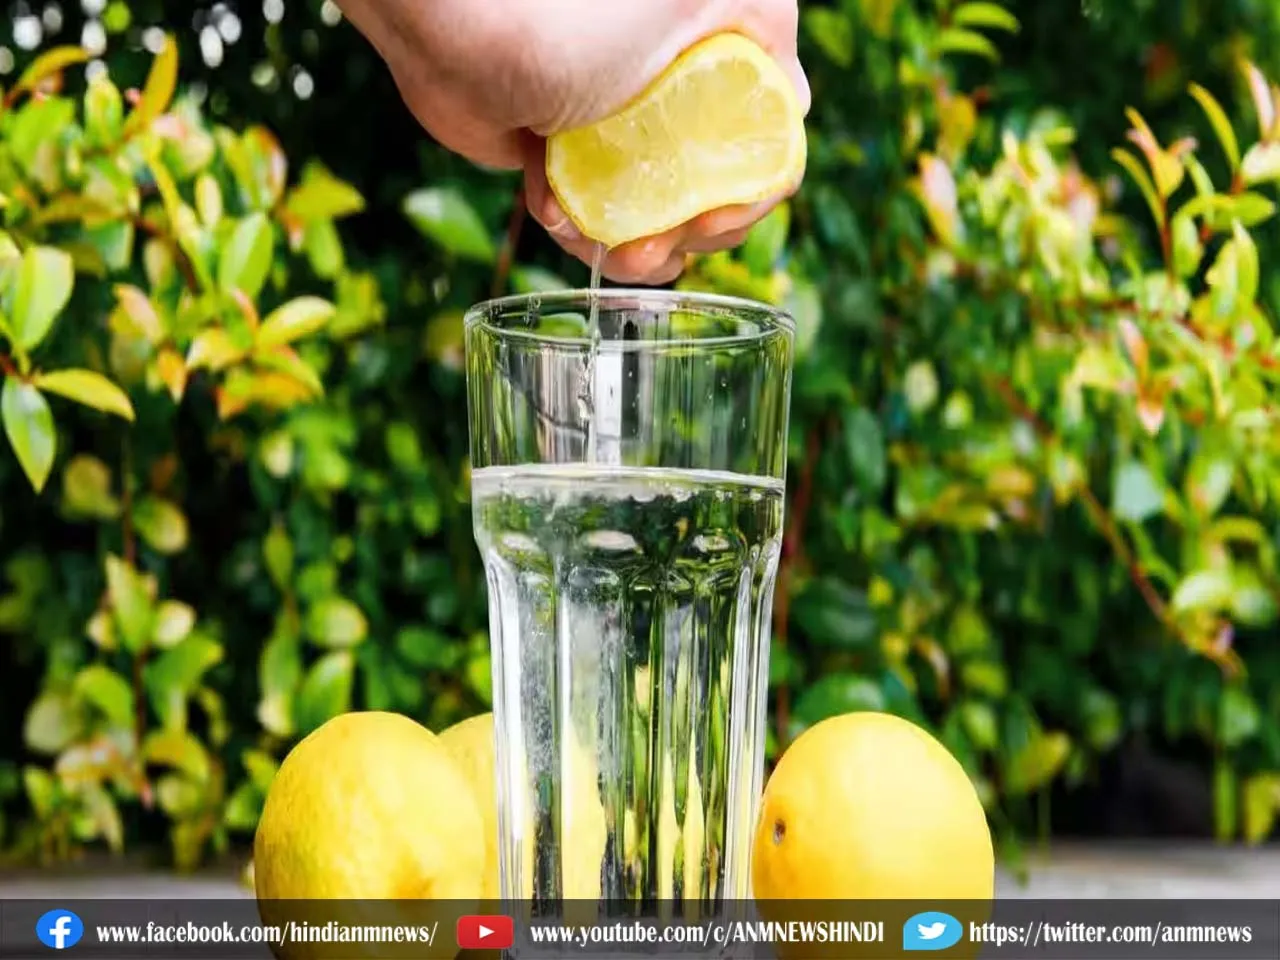 lemonwater benefit